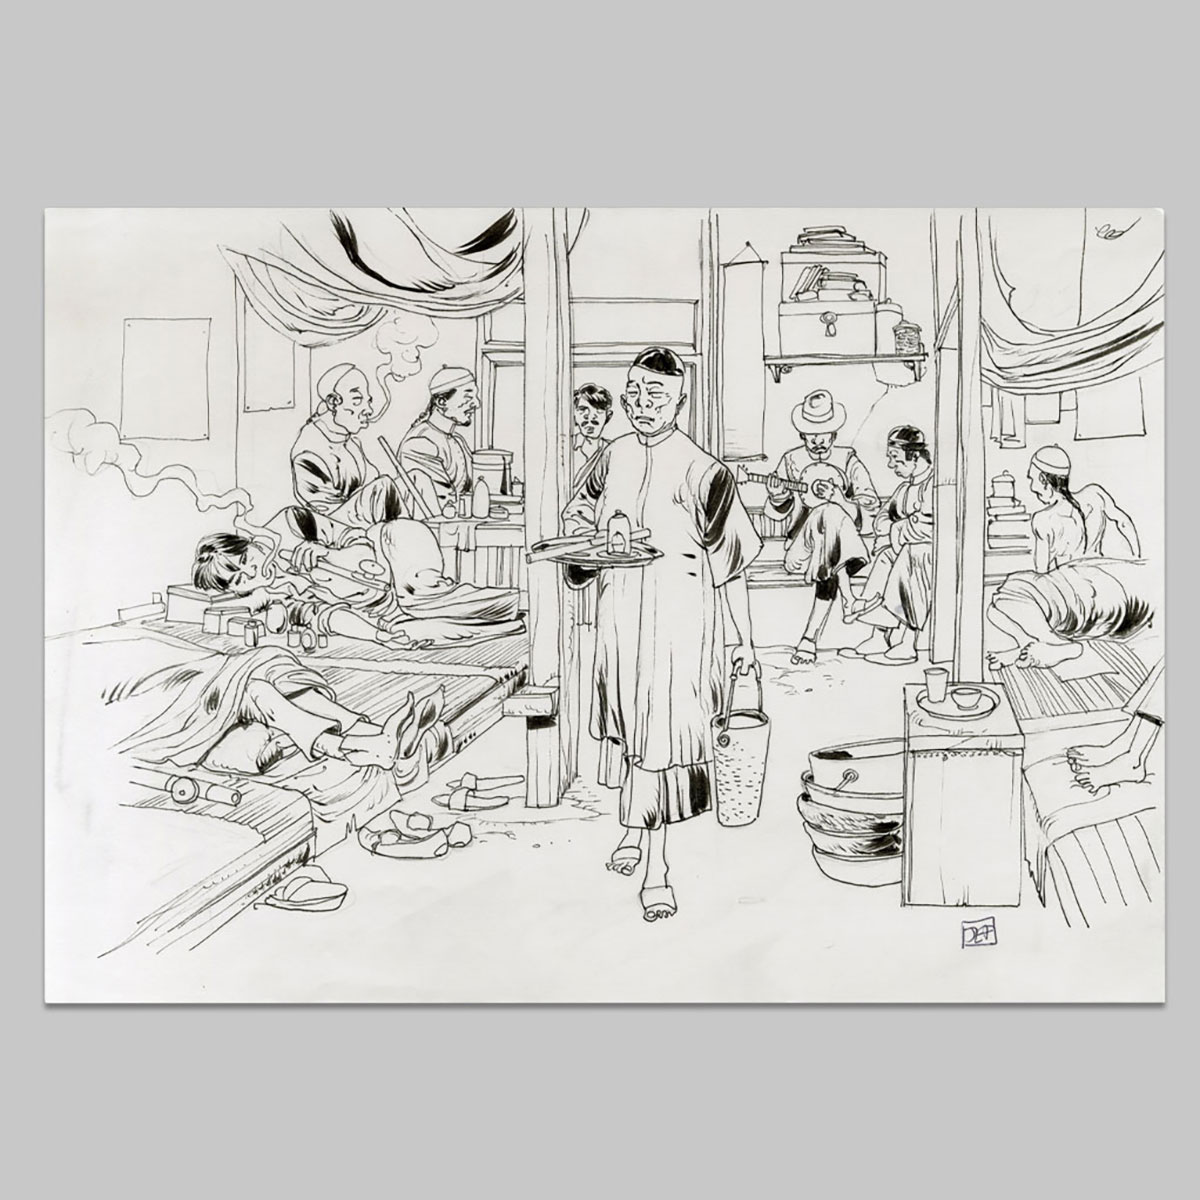 Original Flash illustration, The opium den